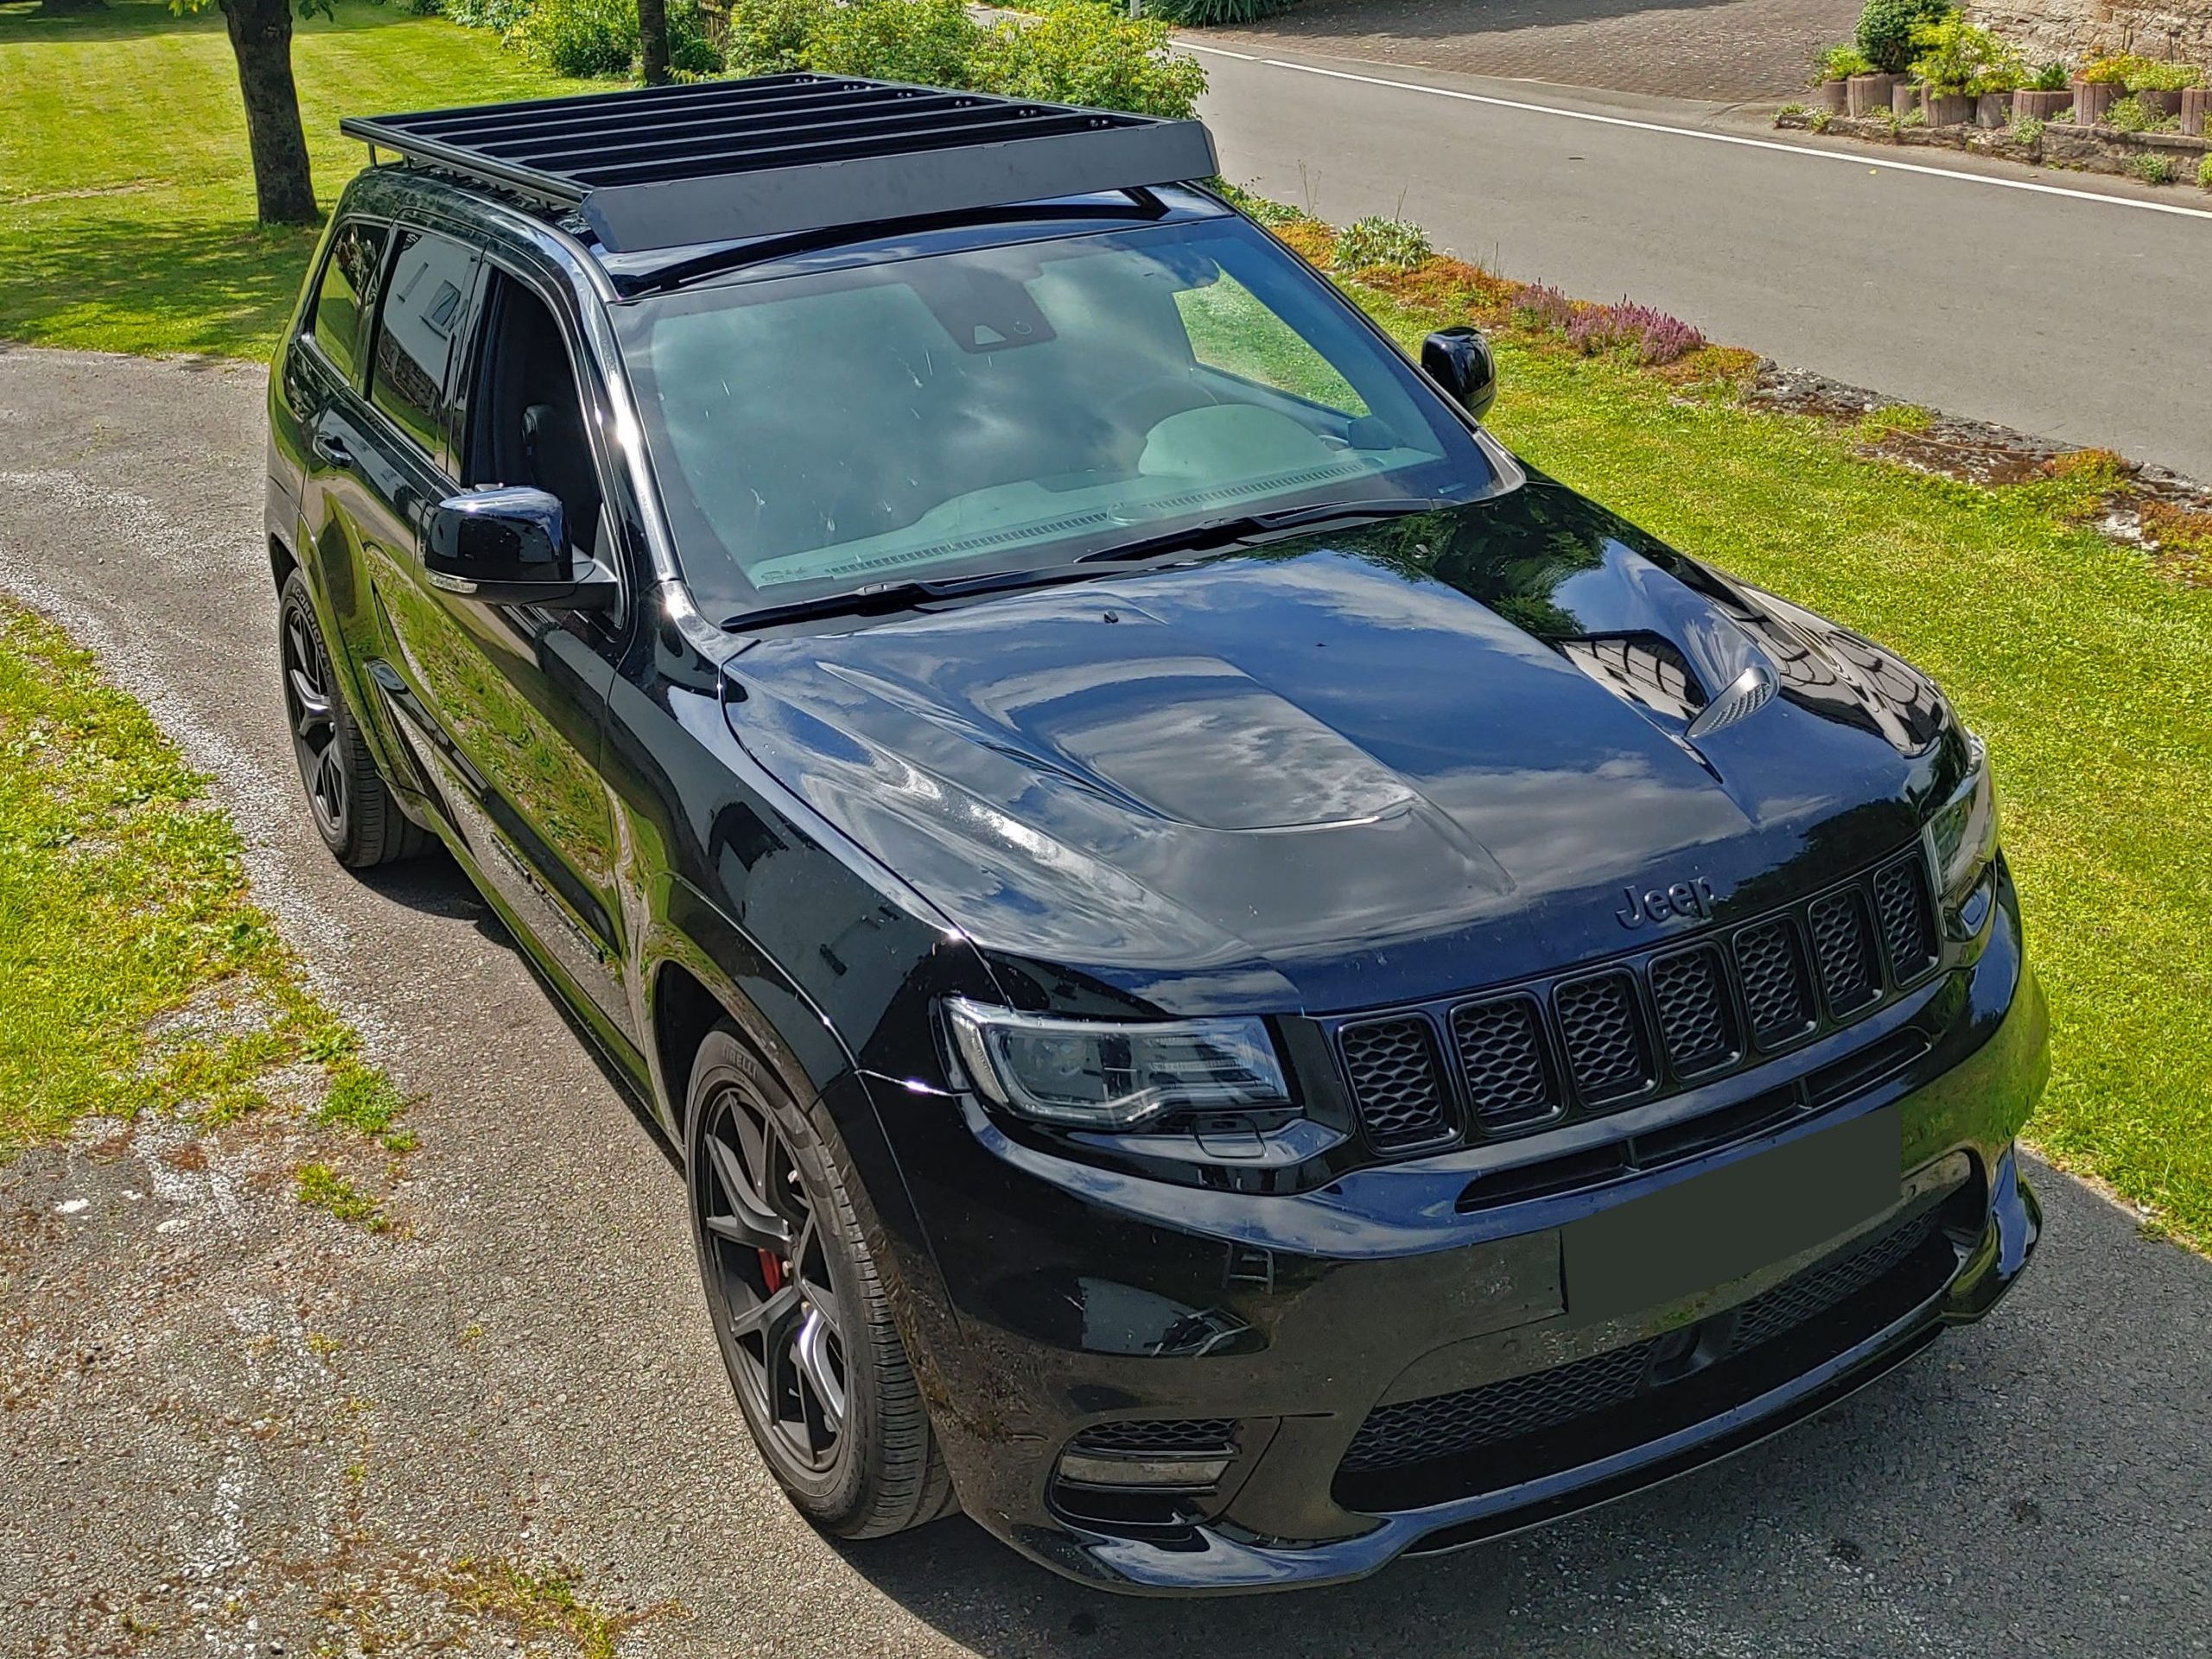 Dachkorb+Dachträger Set für Jeep Cherokee 2014-2021 Aluminium Schwarz